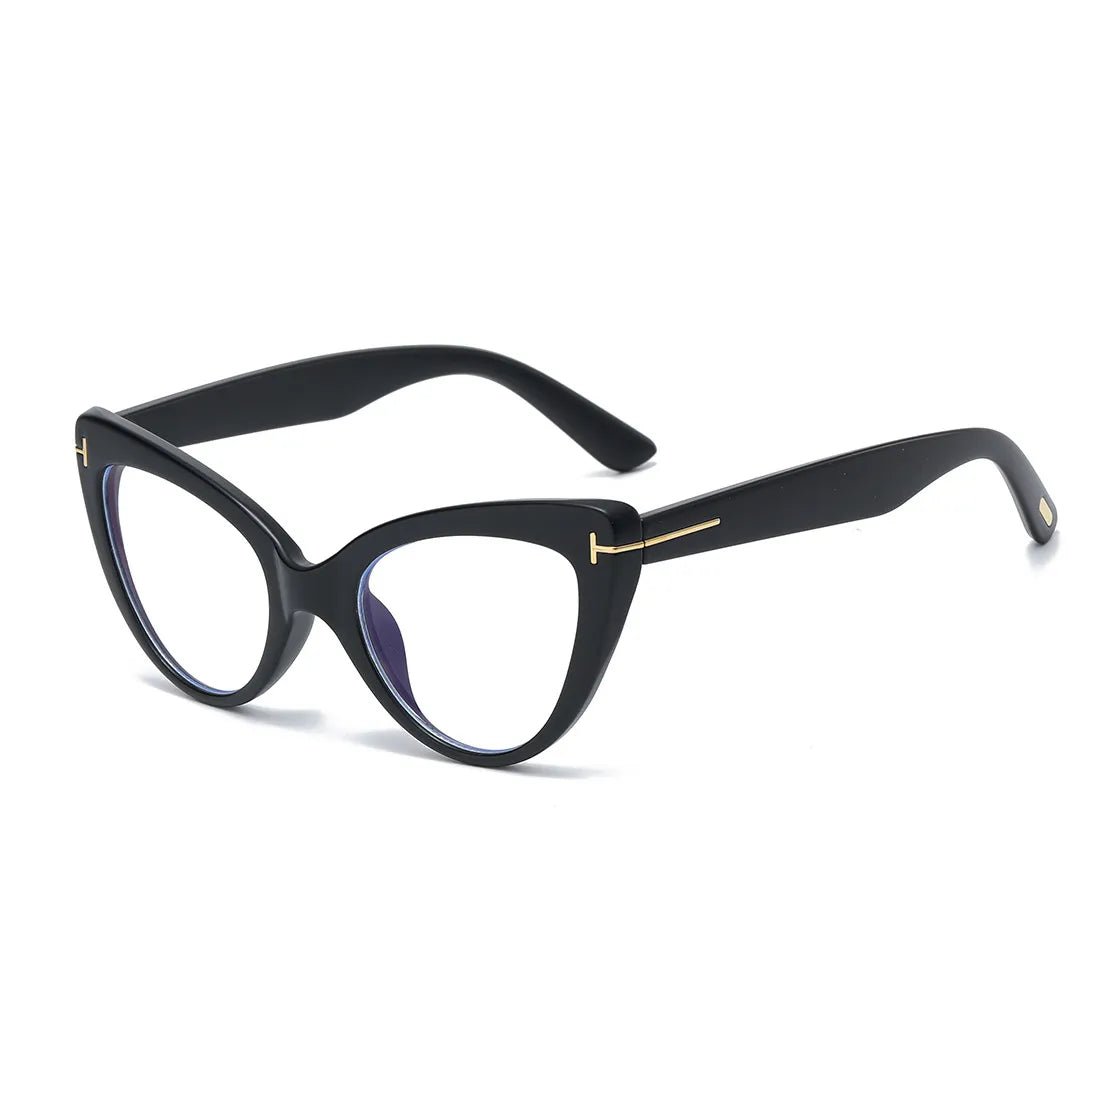 Penelope Glasses Frame - Tha Shade Eyeglasses